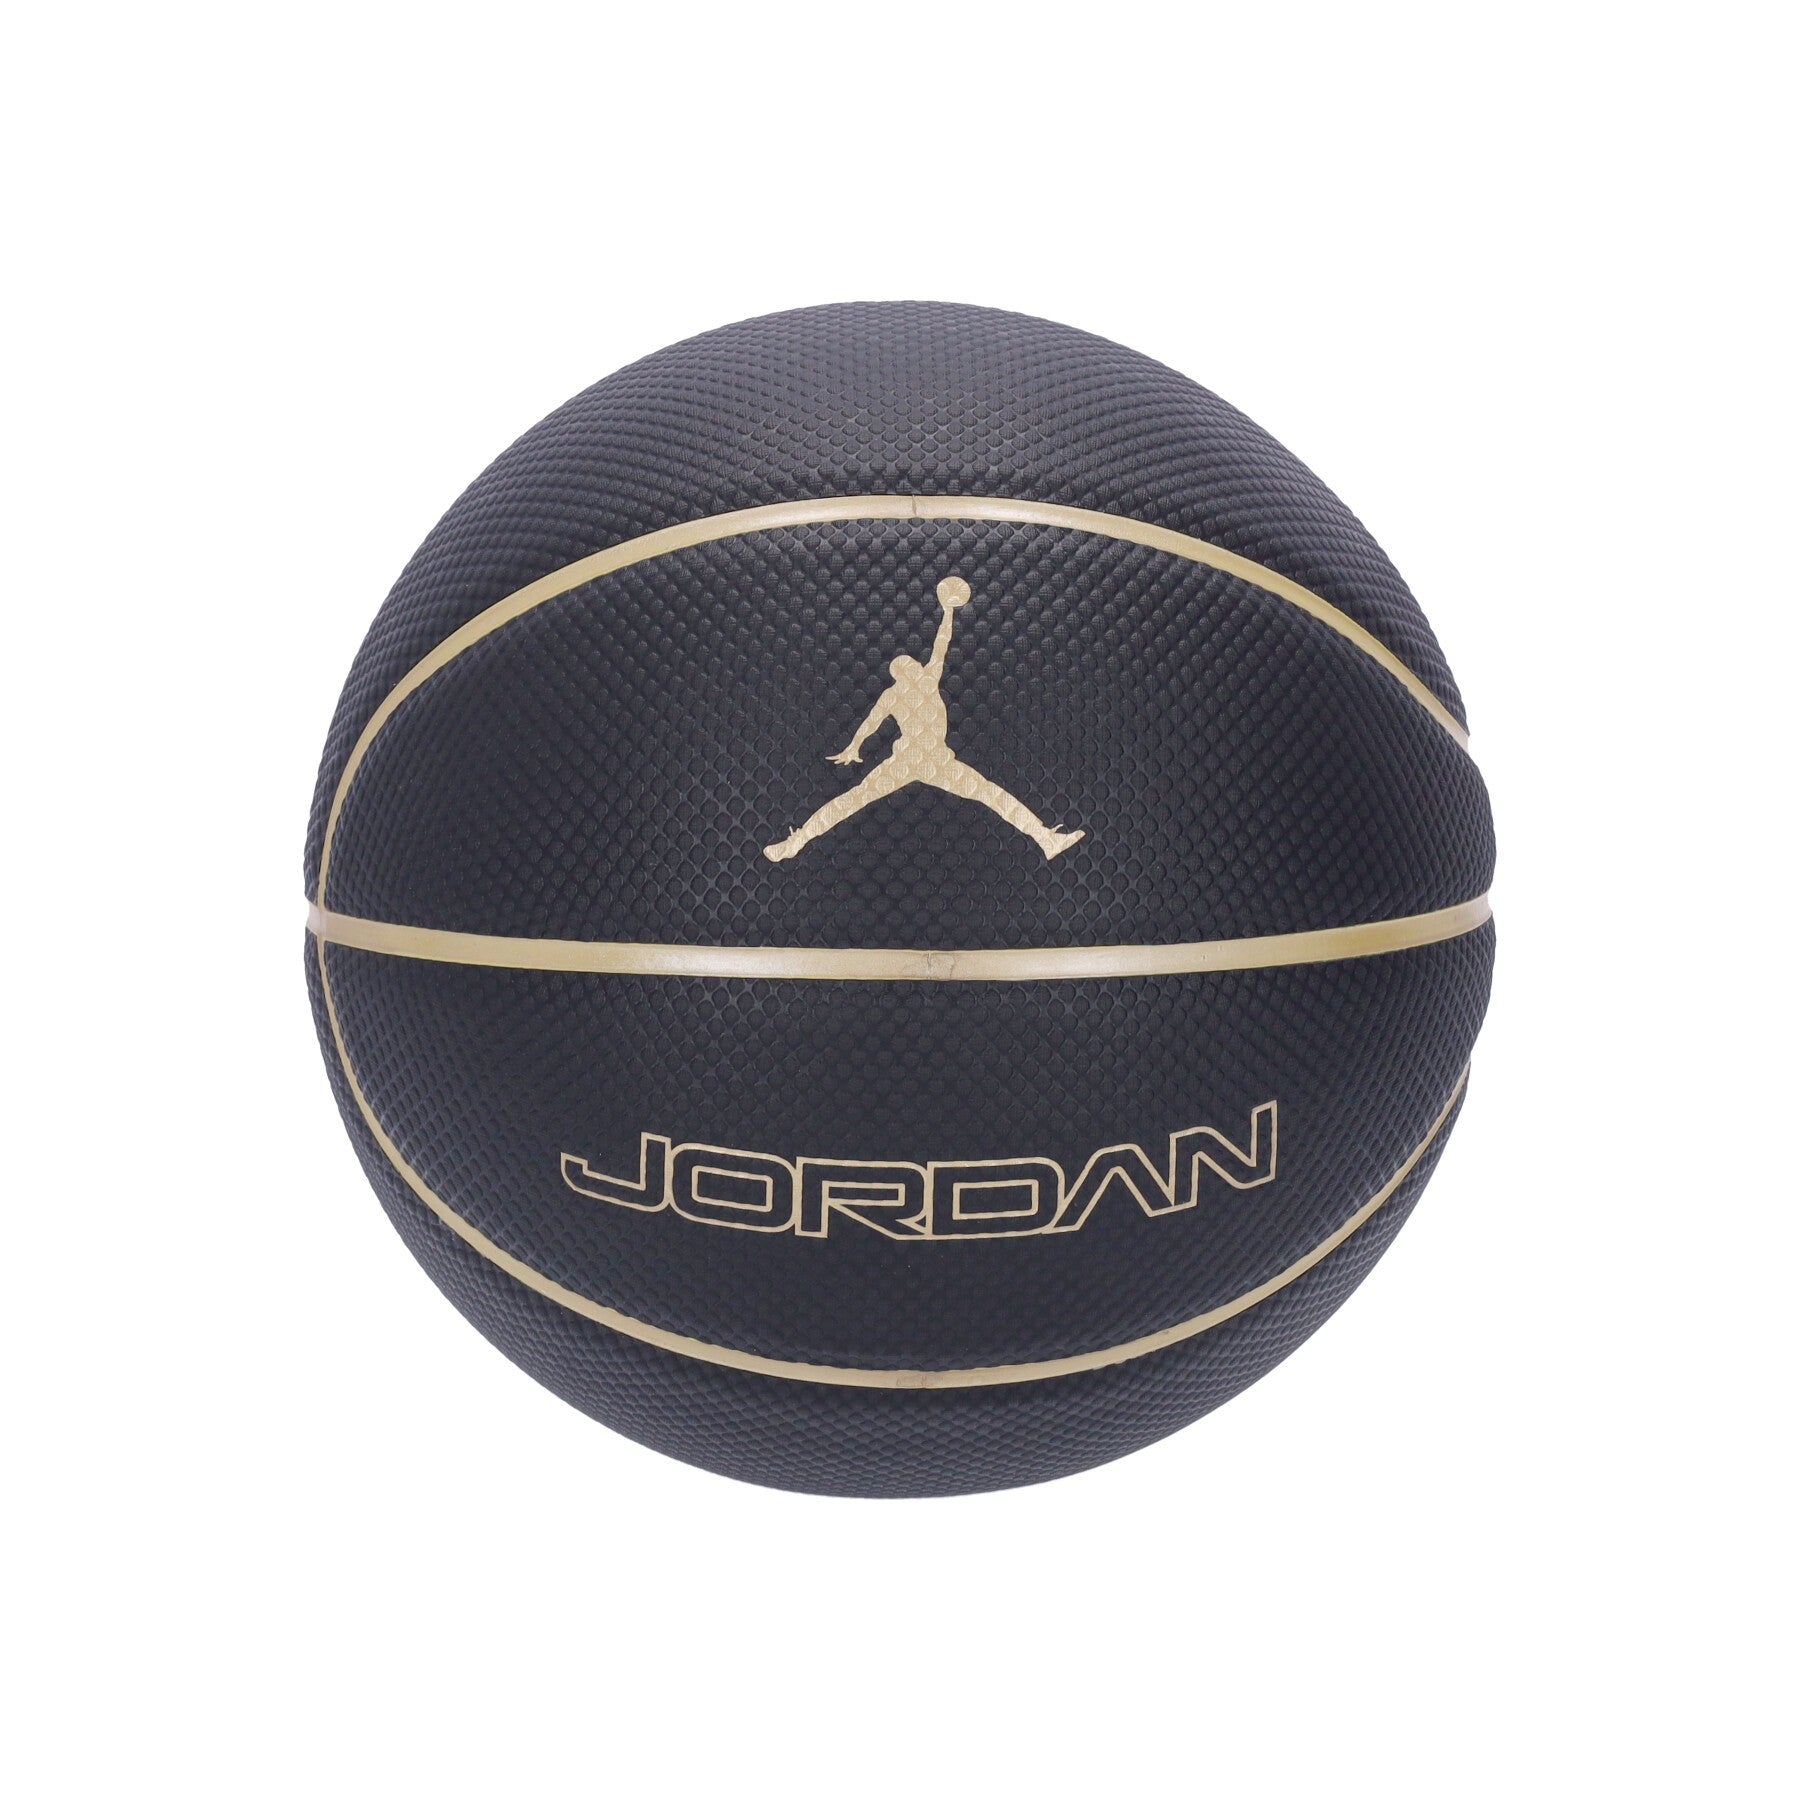 Jordan Legacy Size 7 Men's Ball Black/metallic Gold/metallic Gold